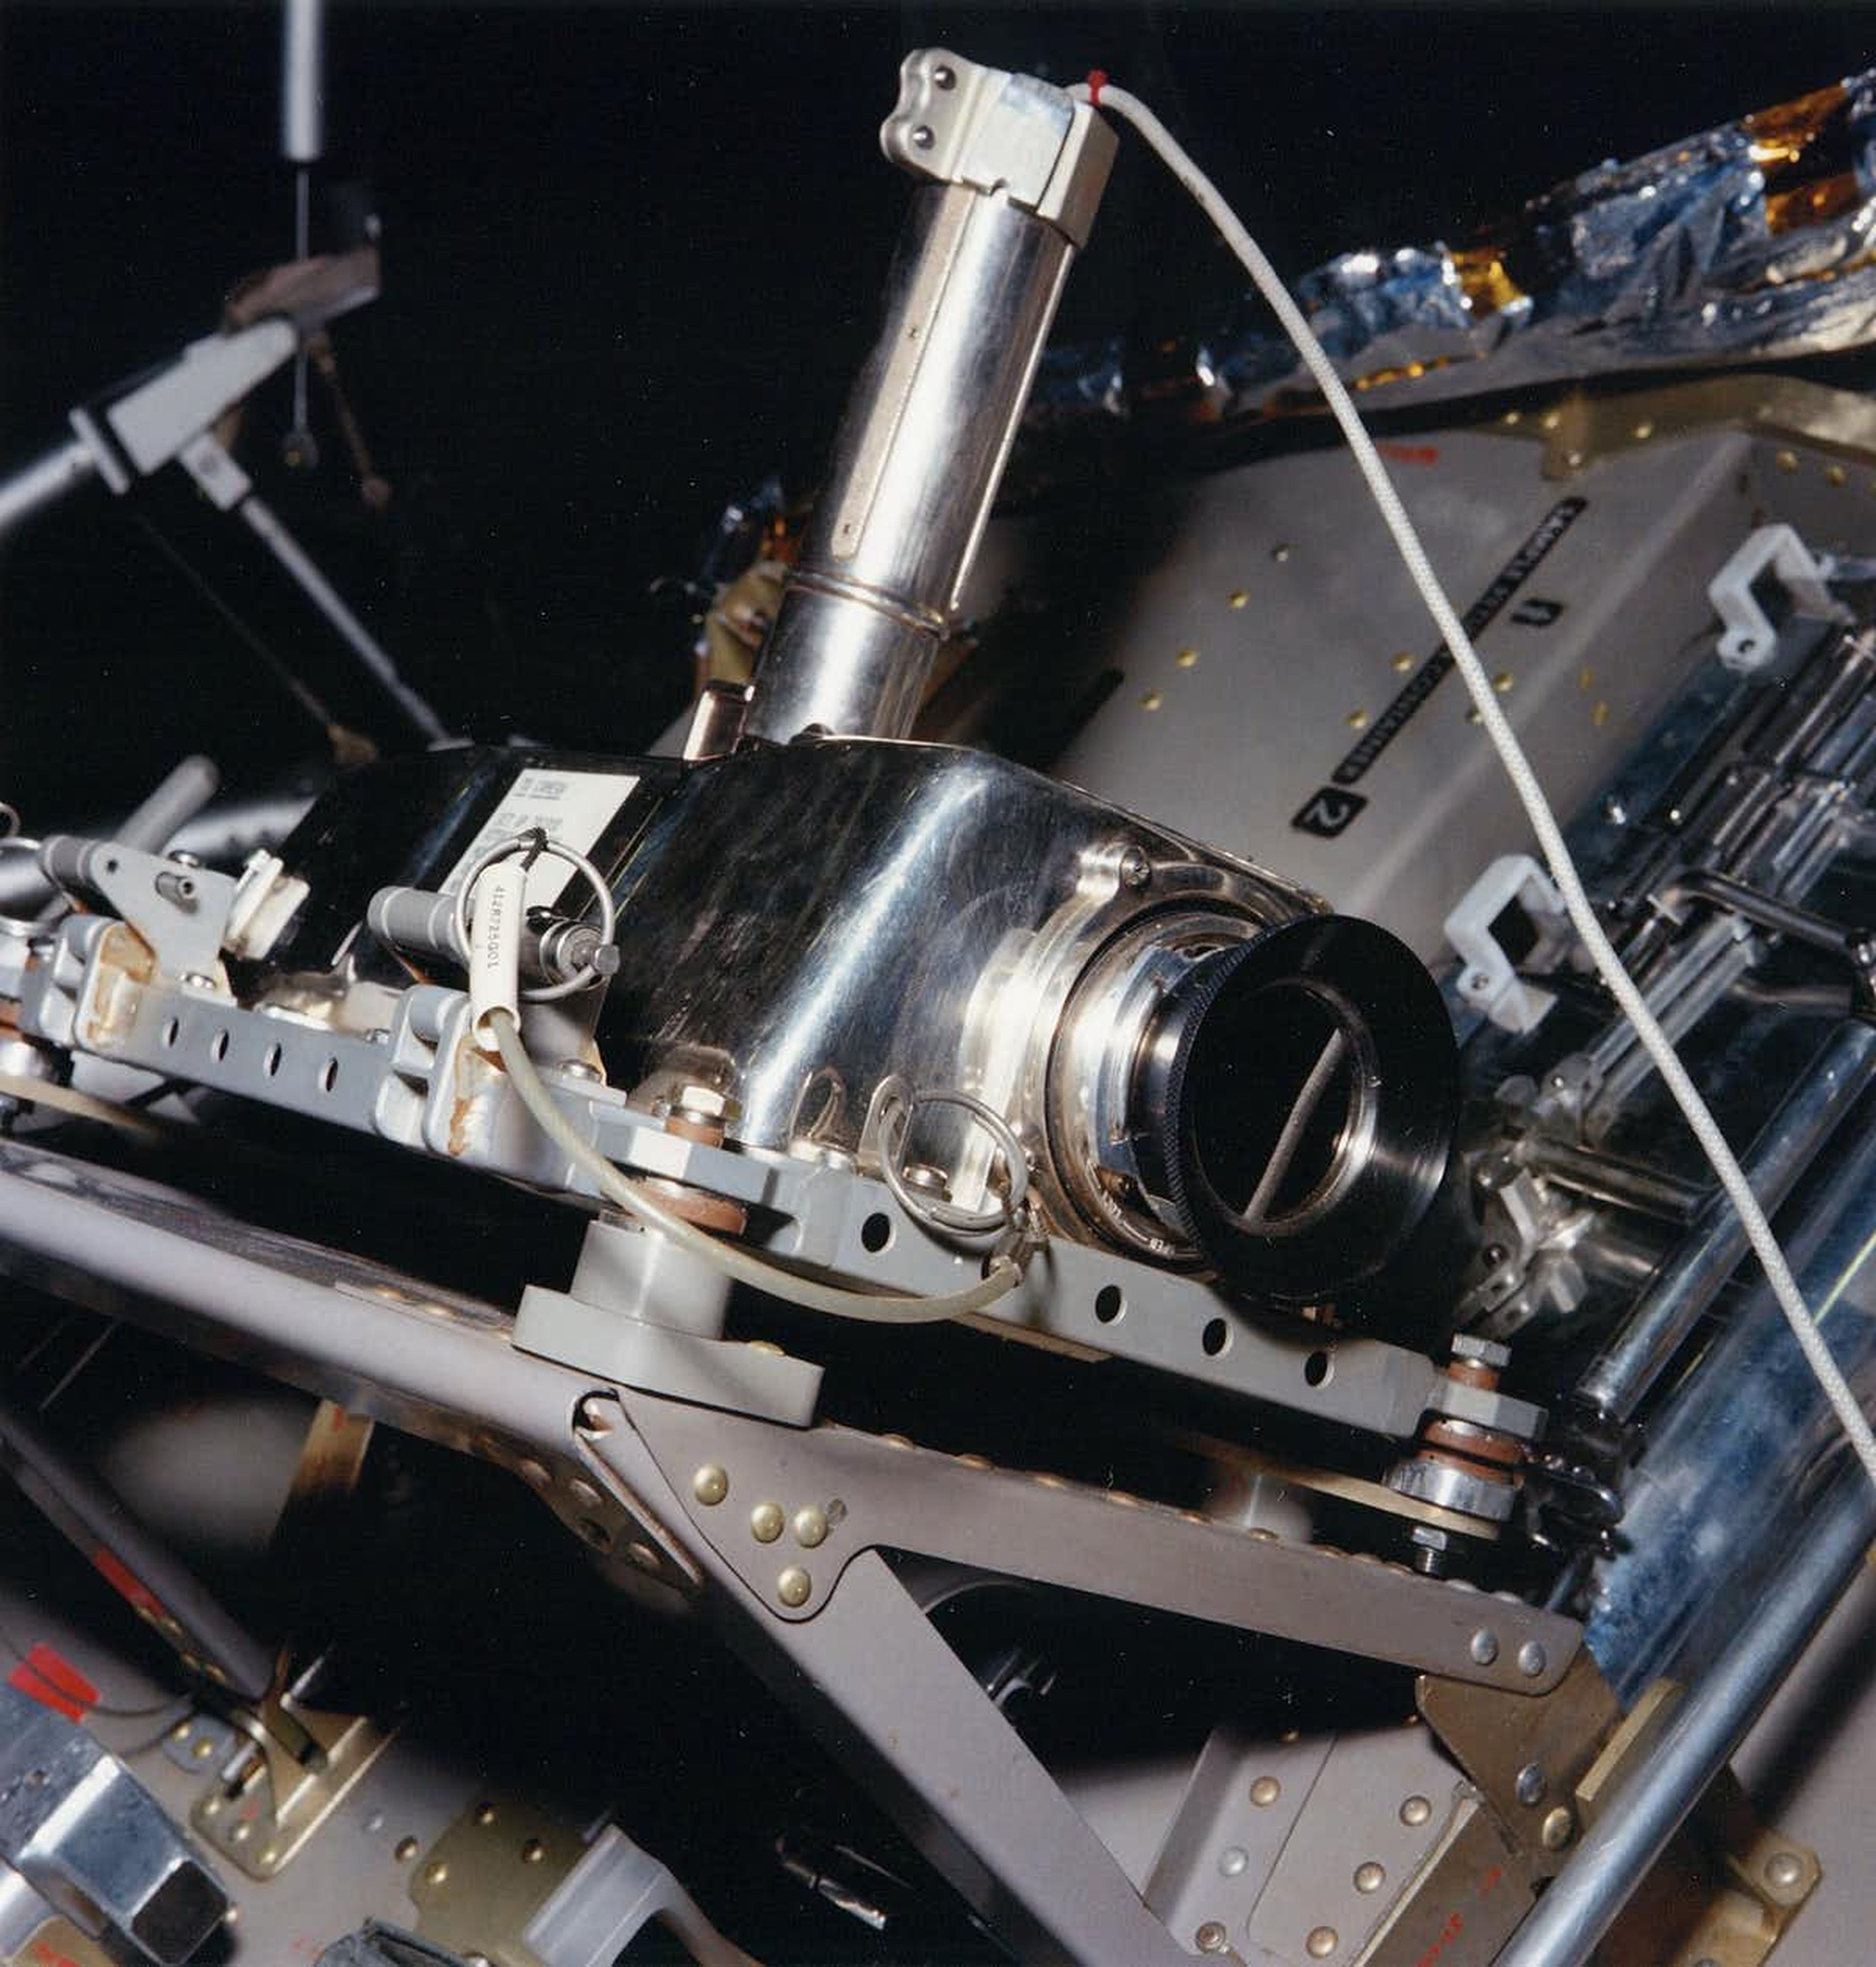 La cámara de televisión del Apolo en su emplazamiento en un lateral del módulo lunar del Apolo 11, desde donde retransmitió el ‘pequeño paso’ de Armstrong.